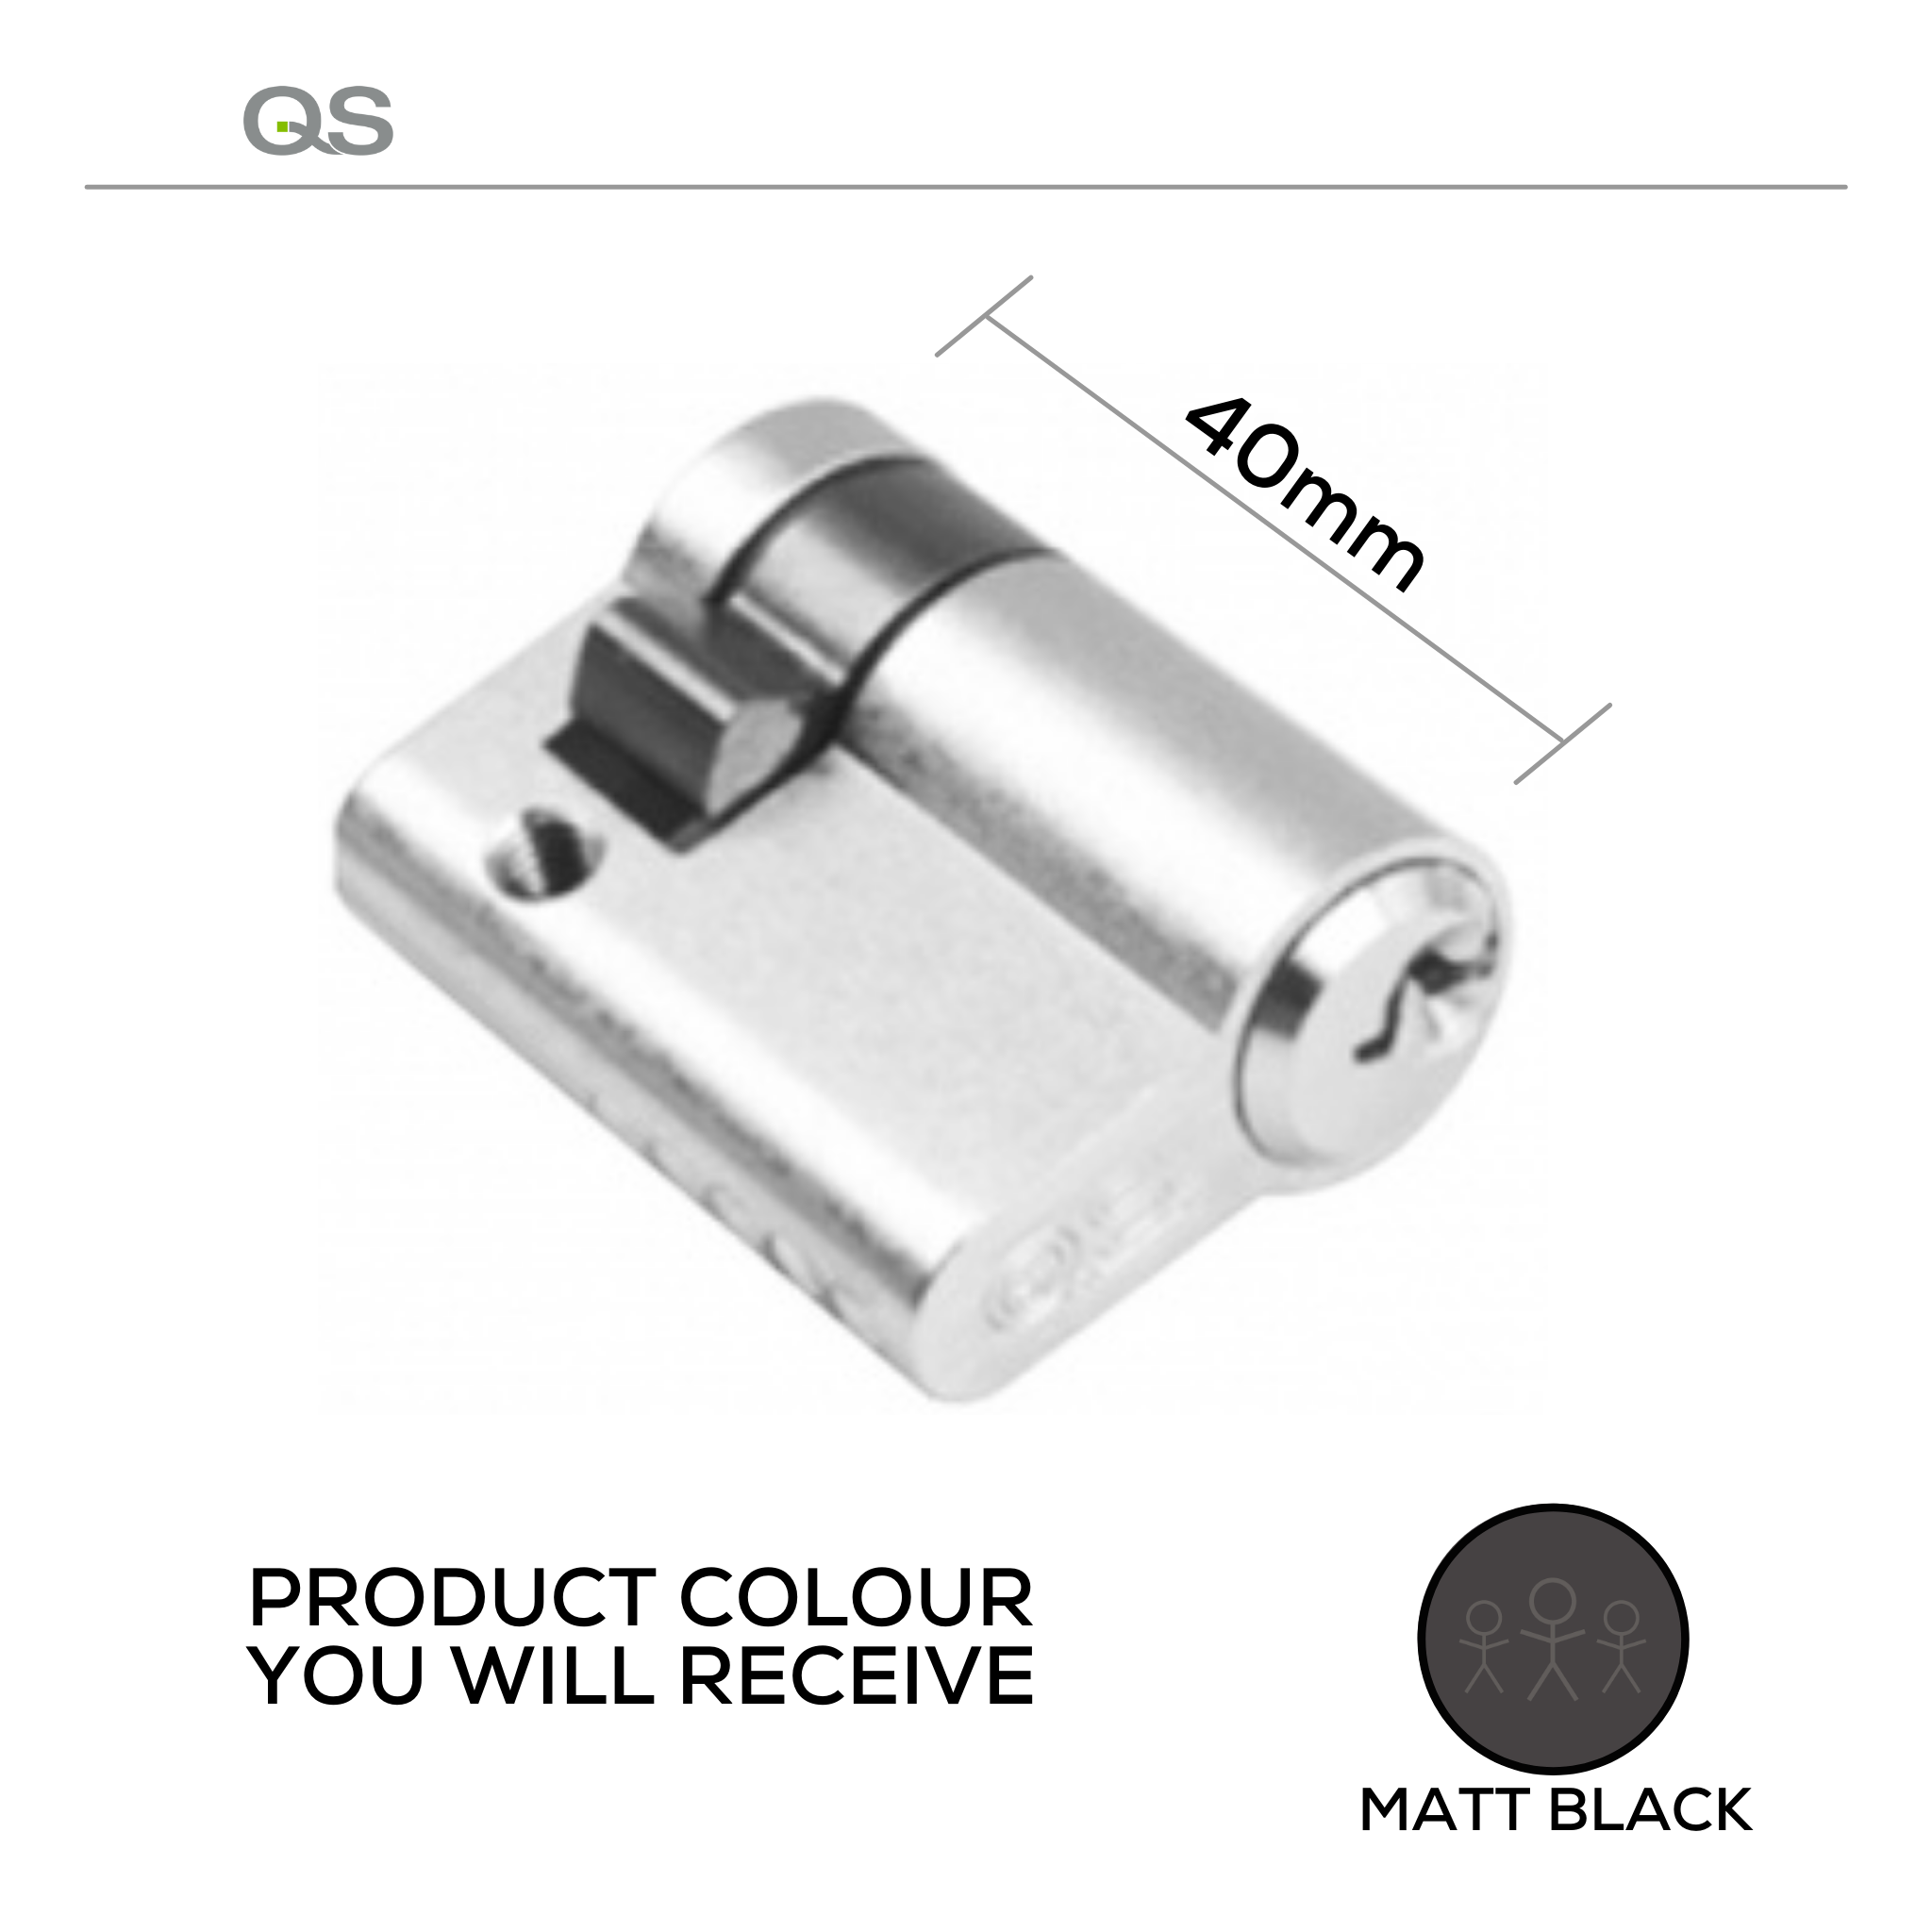 QS1102/Black, 40mm - 30/10, Half (Single Cylinder), Key, Keyed to Differ (Standard), 3 Keys, 5 Pin, Matt Black, QS